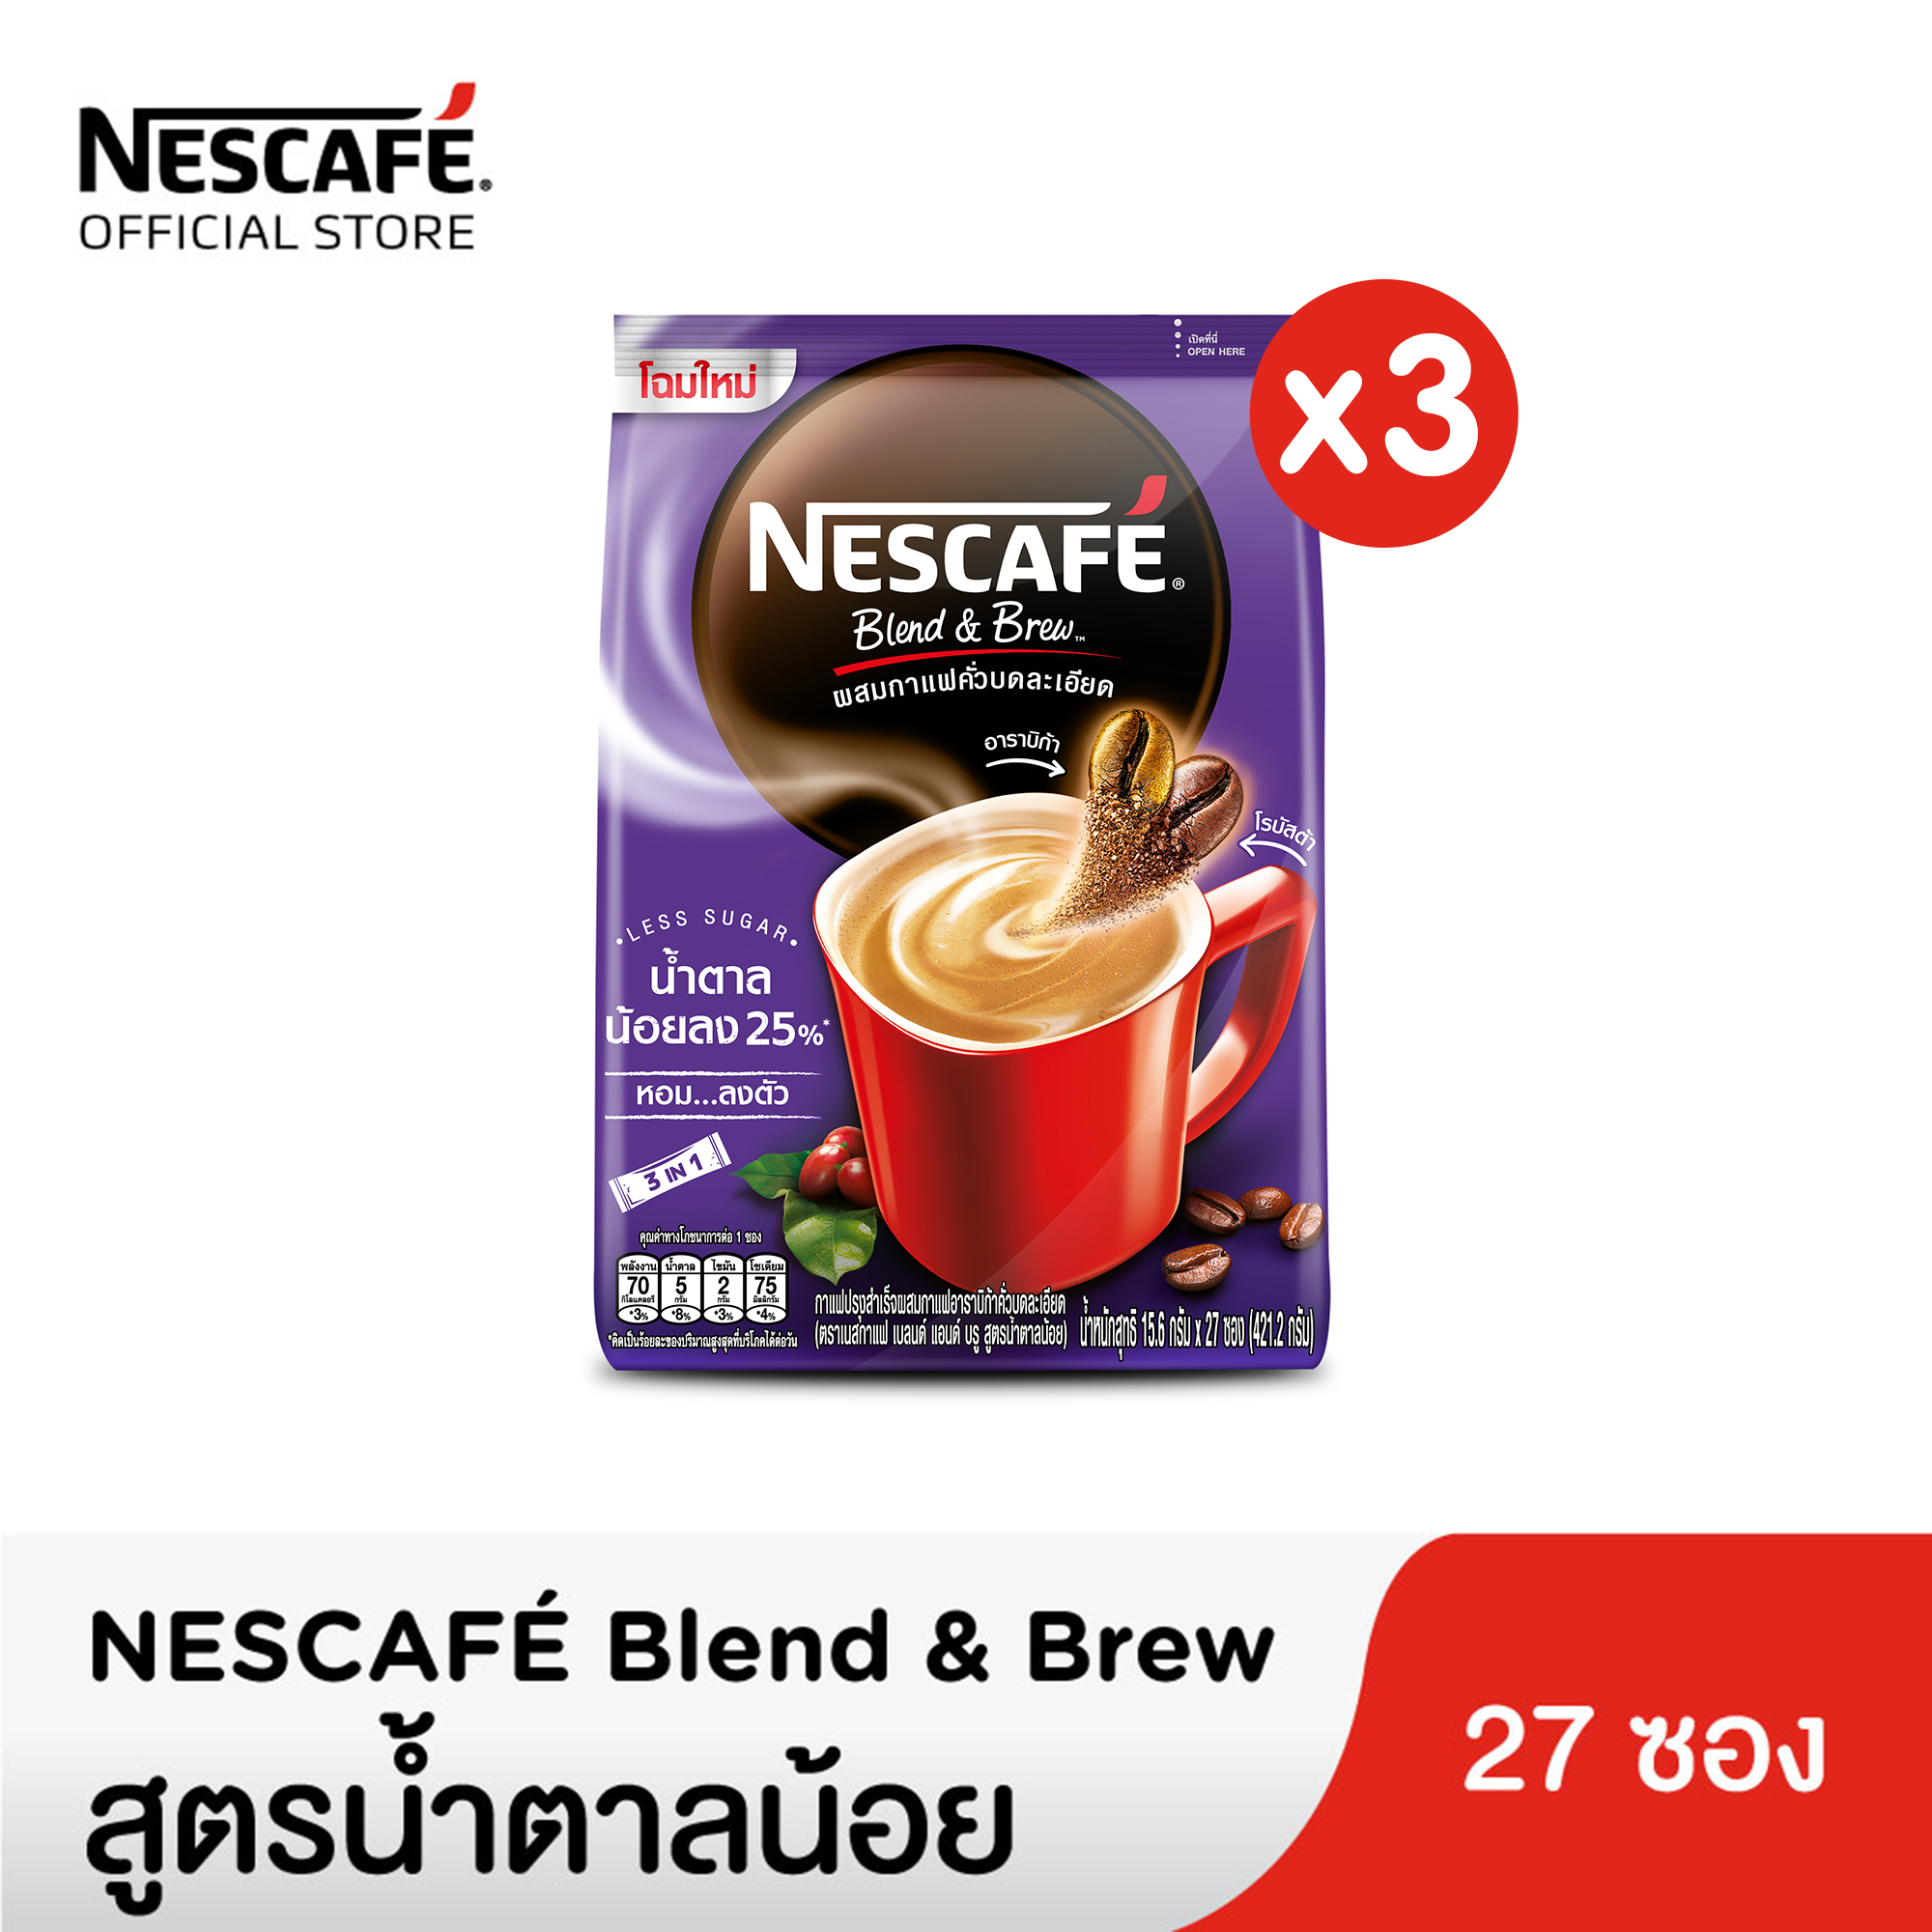 NESCAFE BLEND & BREW 3in1 เนสกาแฟ เบลนด์ แอนด์ บรู 3อิน1 กาแฟปรุงสำเร็จ สูตรน้ำตาลน้อย 15.6 กรัม 27ซอง (3 แพ็ค)